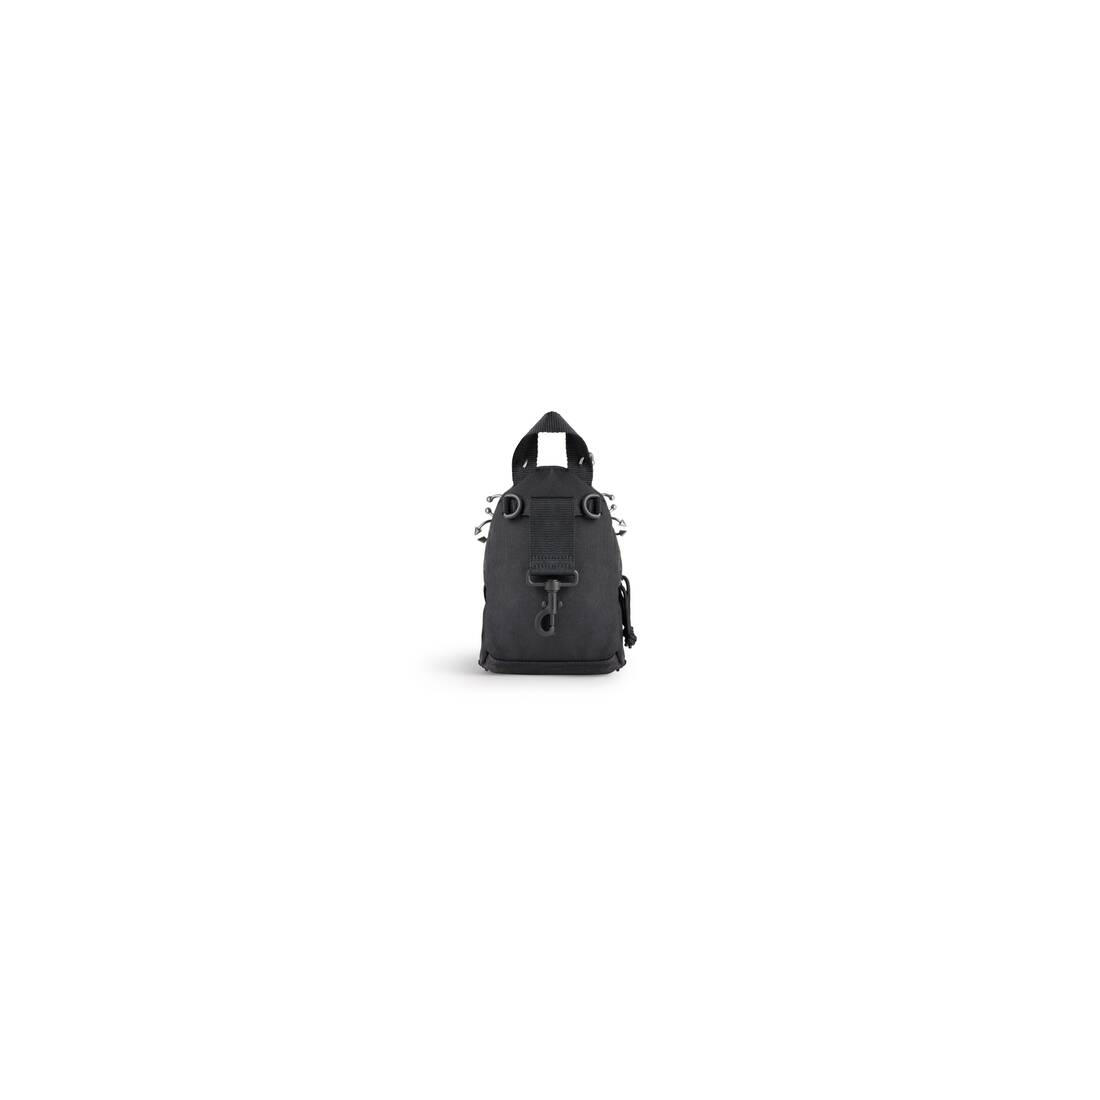 BALENCIAGA EXPLORER Small Backpack